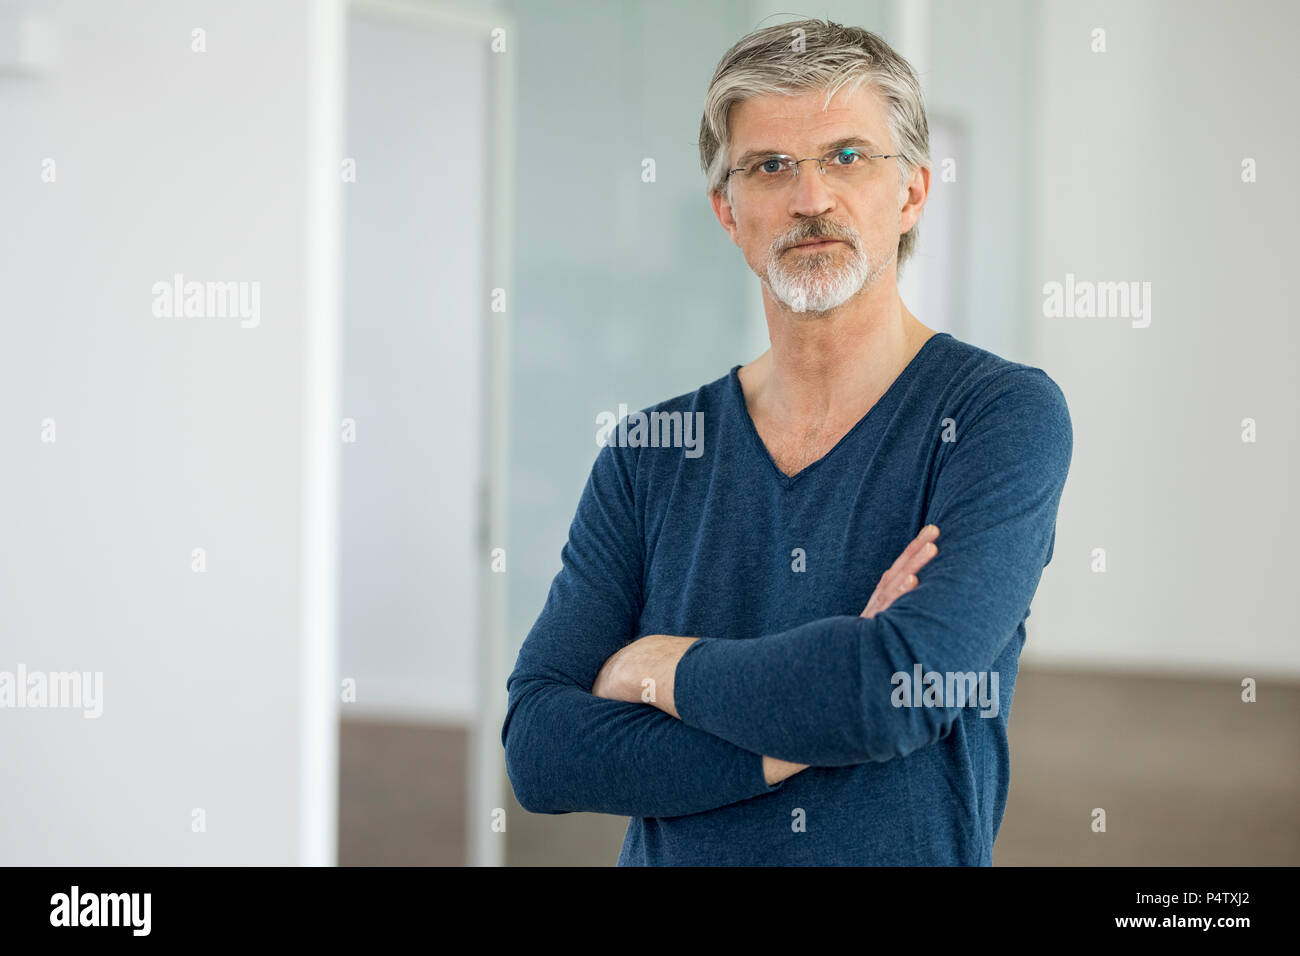 Portrait of a mature businessman Stock Photo